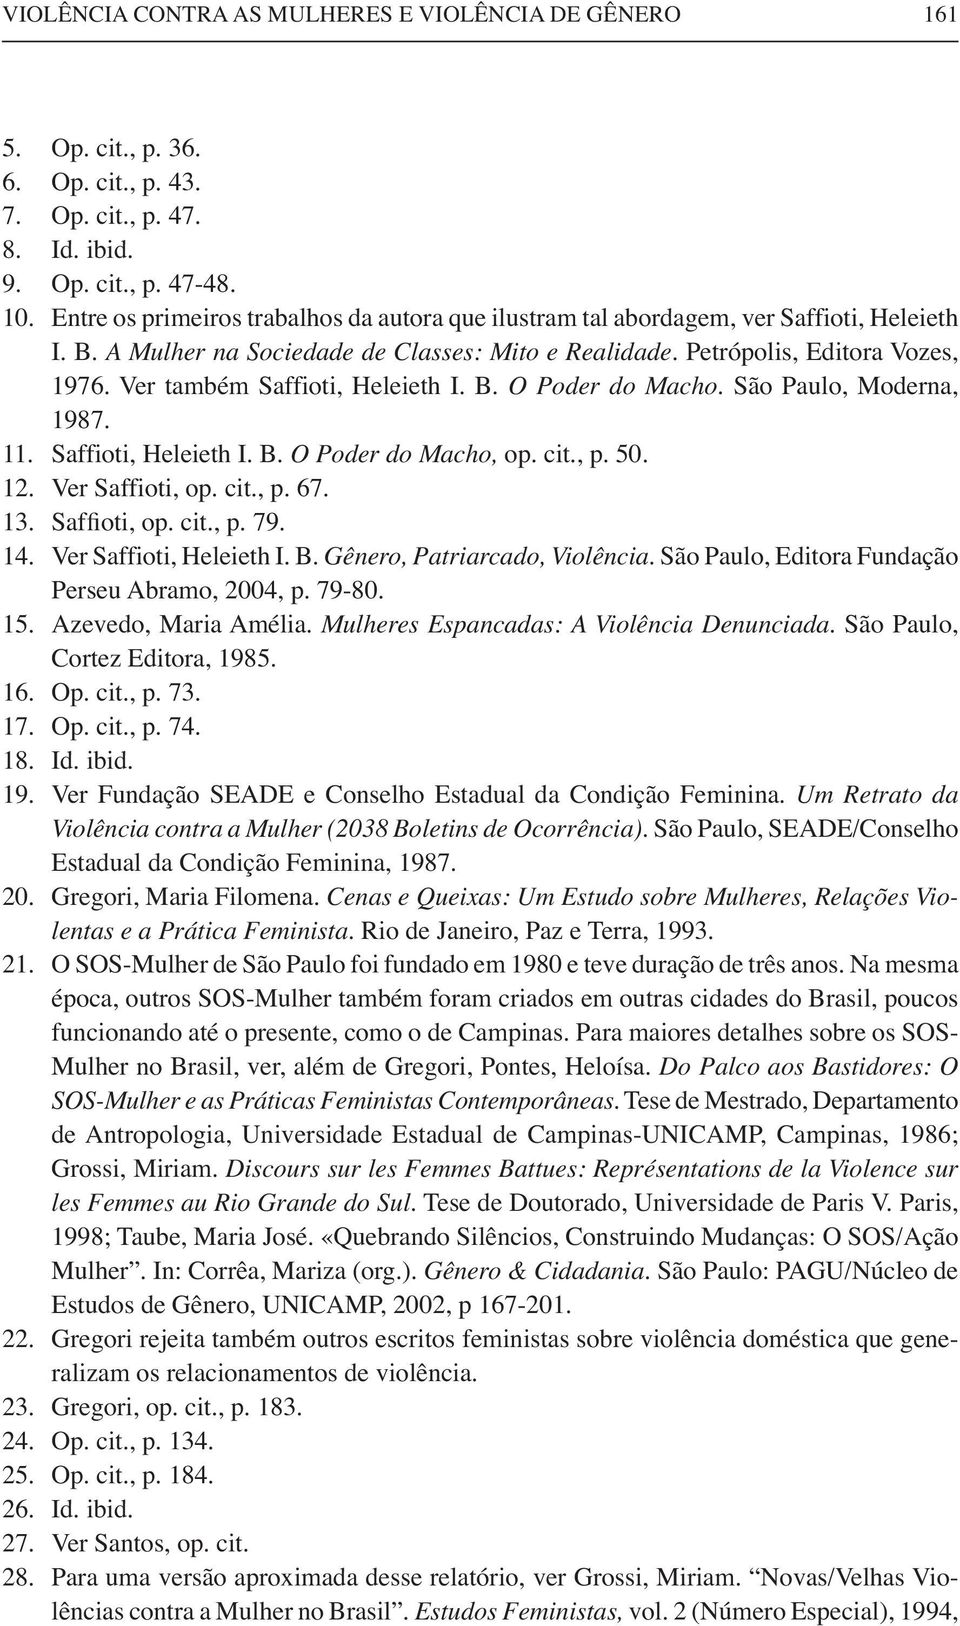 Ver também Saffioti, Heleieth I. B. O Poder do Macho. São Paulo, Moderna, 1987. 11. Saffioti, Heleieth I. B. O Poder do Macho, op. cit., p. 50. 12. Ver Saffioti, op. cit., p. 67. 13. Saffioti, op. cit., p. 79.